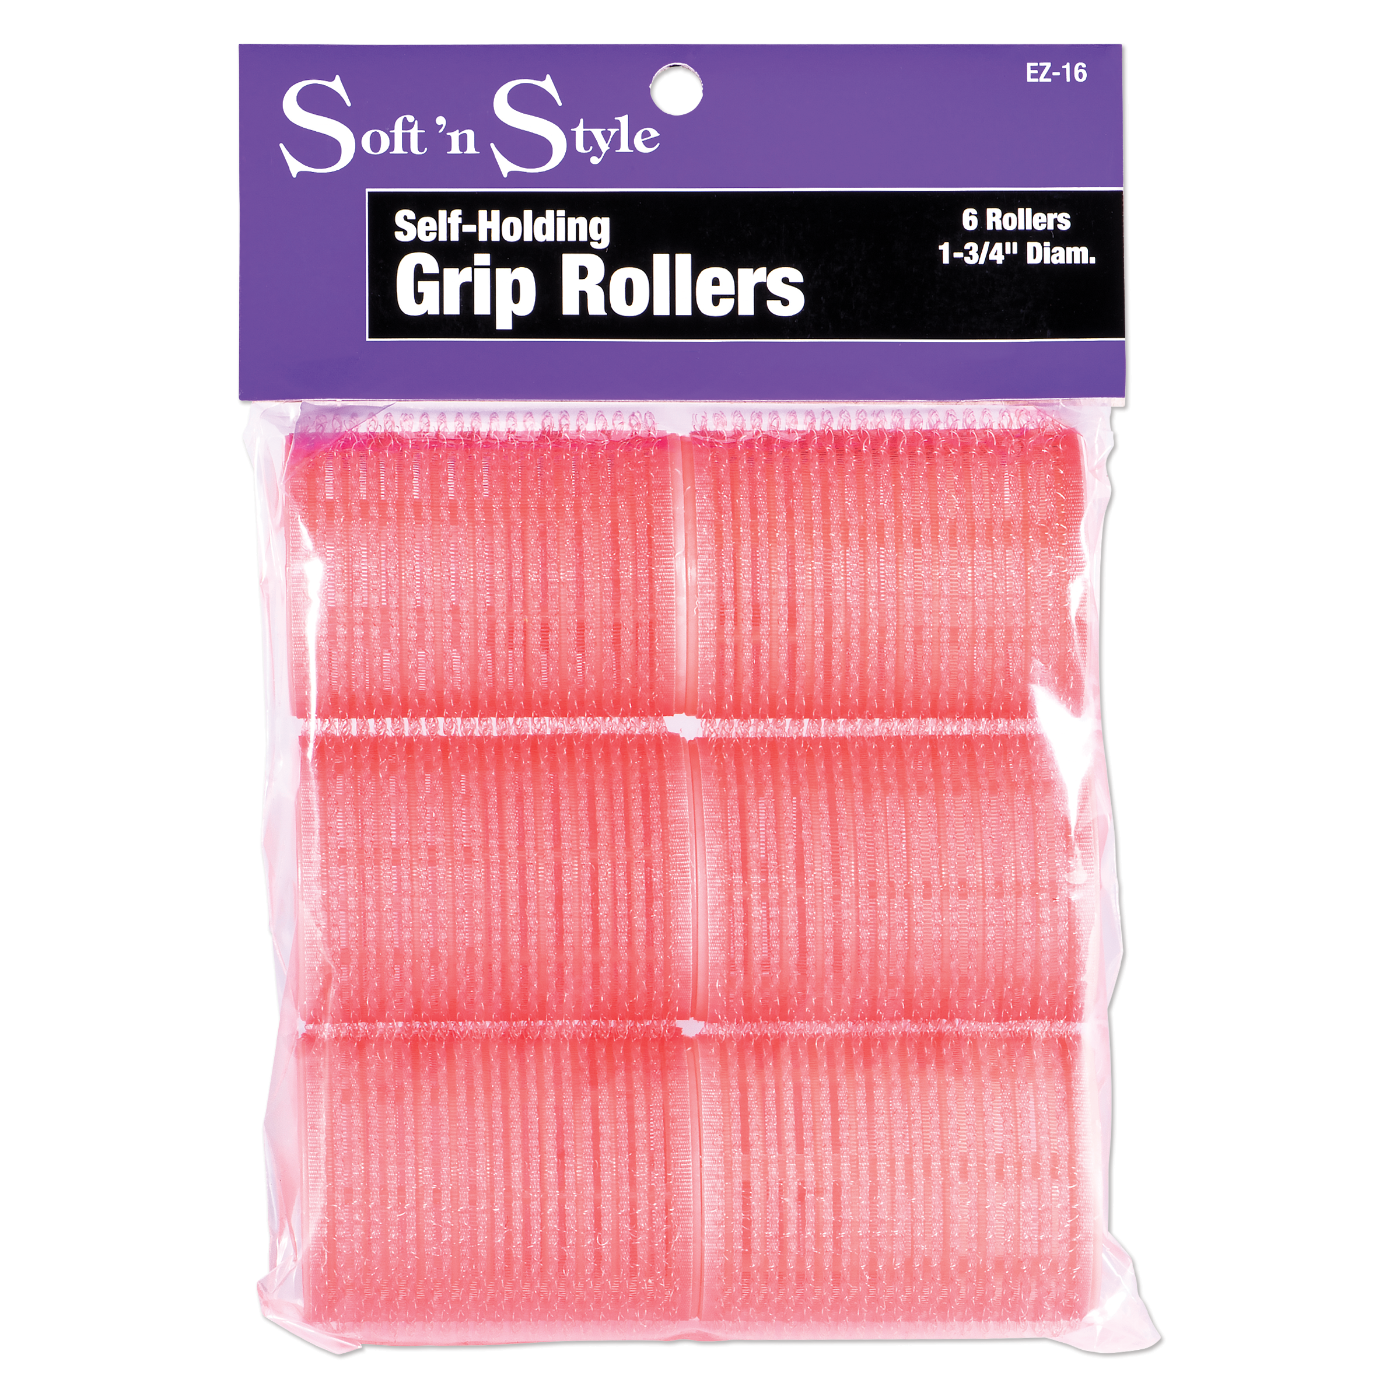 Self-Grip Rollers, Pink - 1-3/4"